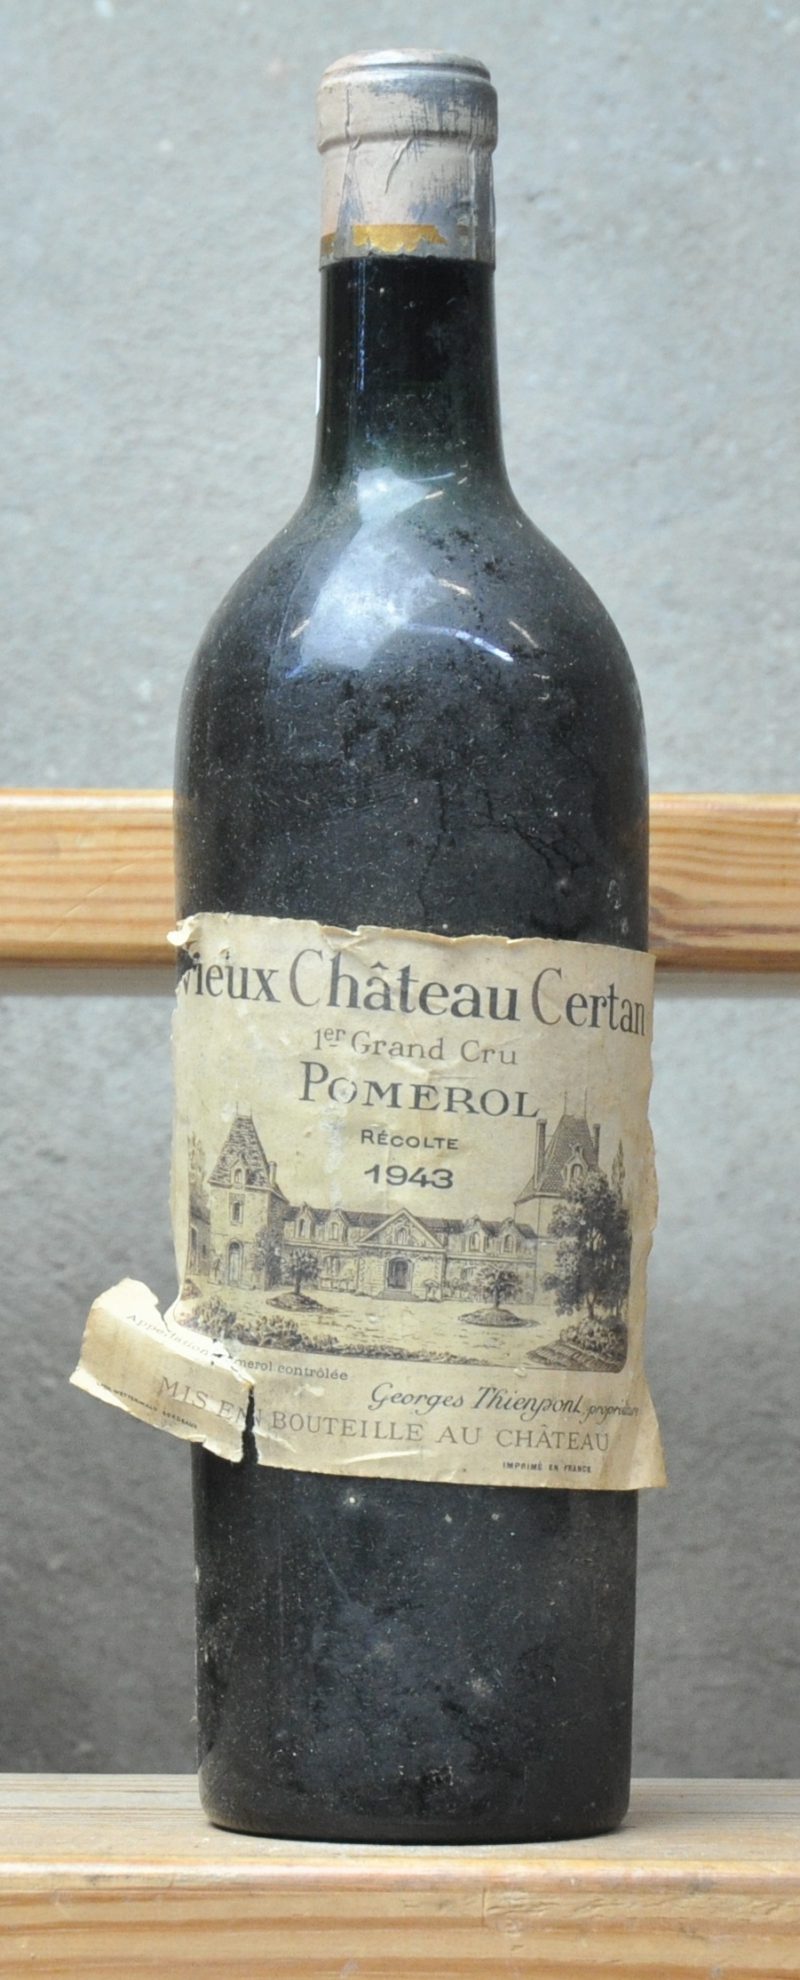 Vieux Château Certan A.C. Pomerol   M.C.  1943  aantal: 1 Bt. ts - beschadigd etiket